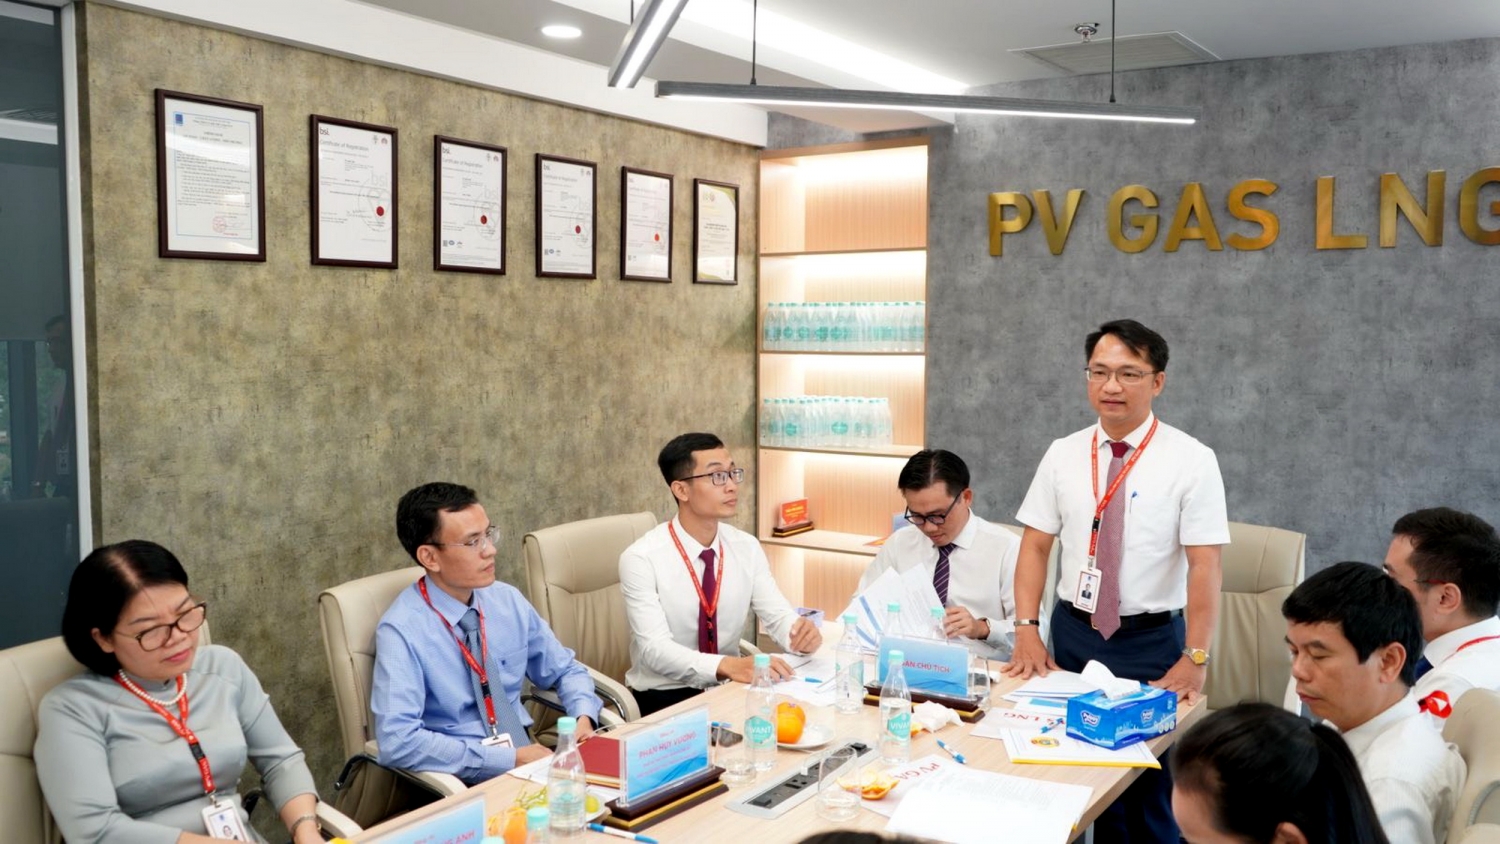 Đại hội Công đoàn PV GAS LNG nhiệm kỳ 2023-2028 vừa được tổ chức thành công tại Tp. Hồ Chí Minh